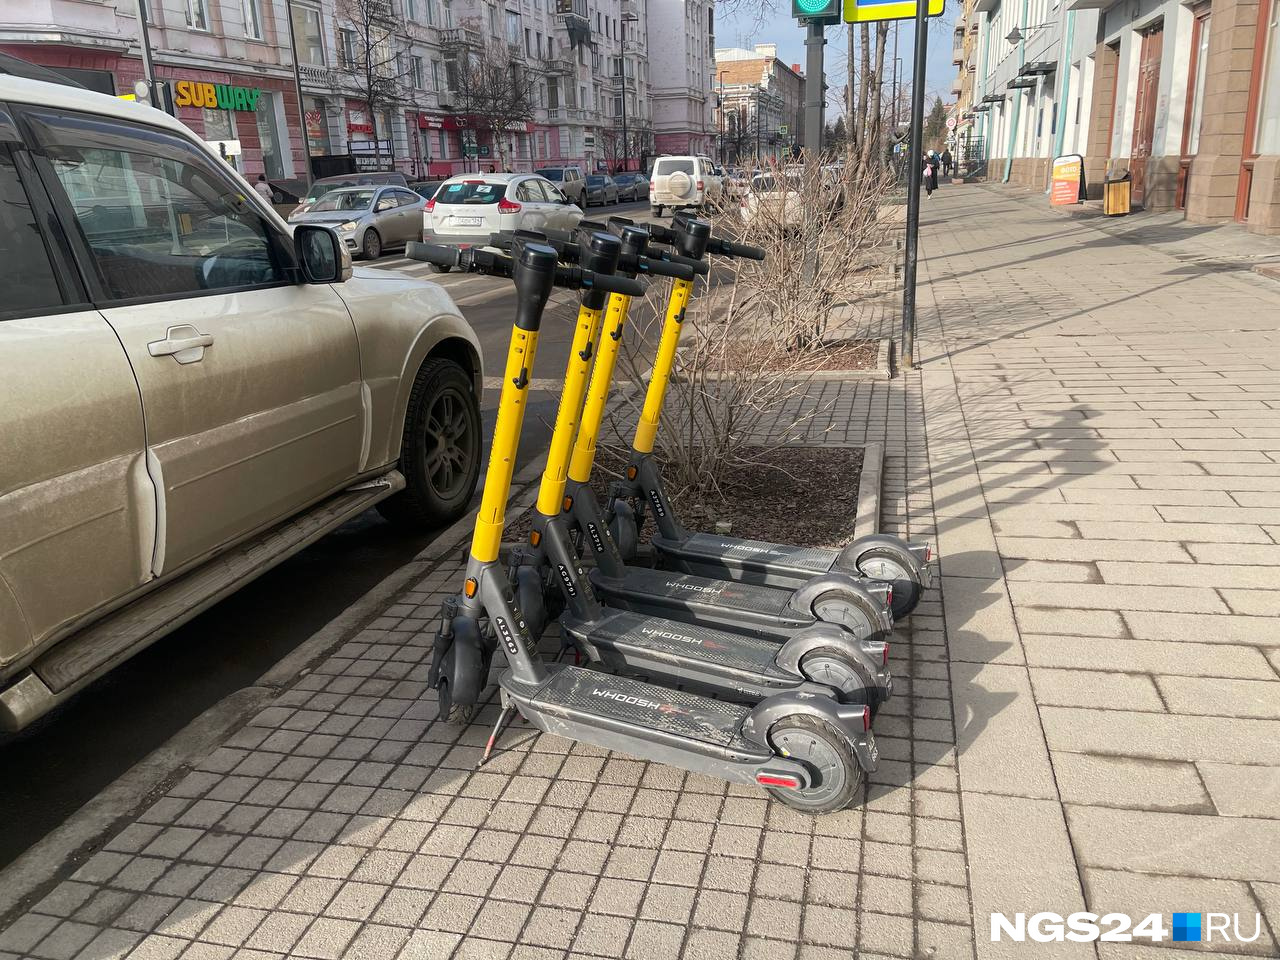 Пешеходы, приготовьтесь: с потеплением в Красноярске появились первые самокаты и их станет еще больше